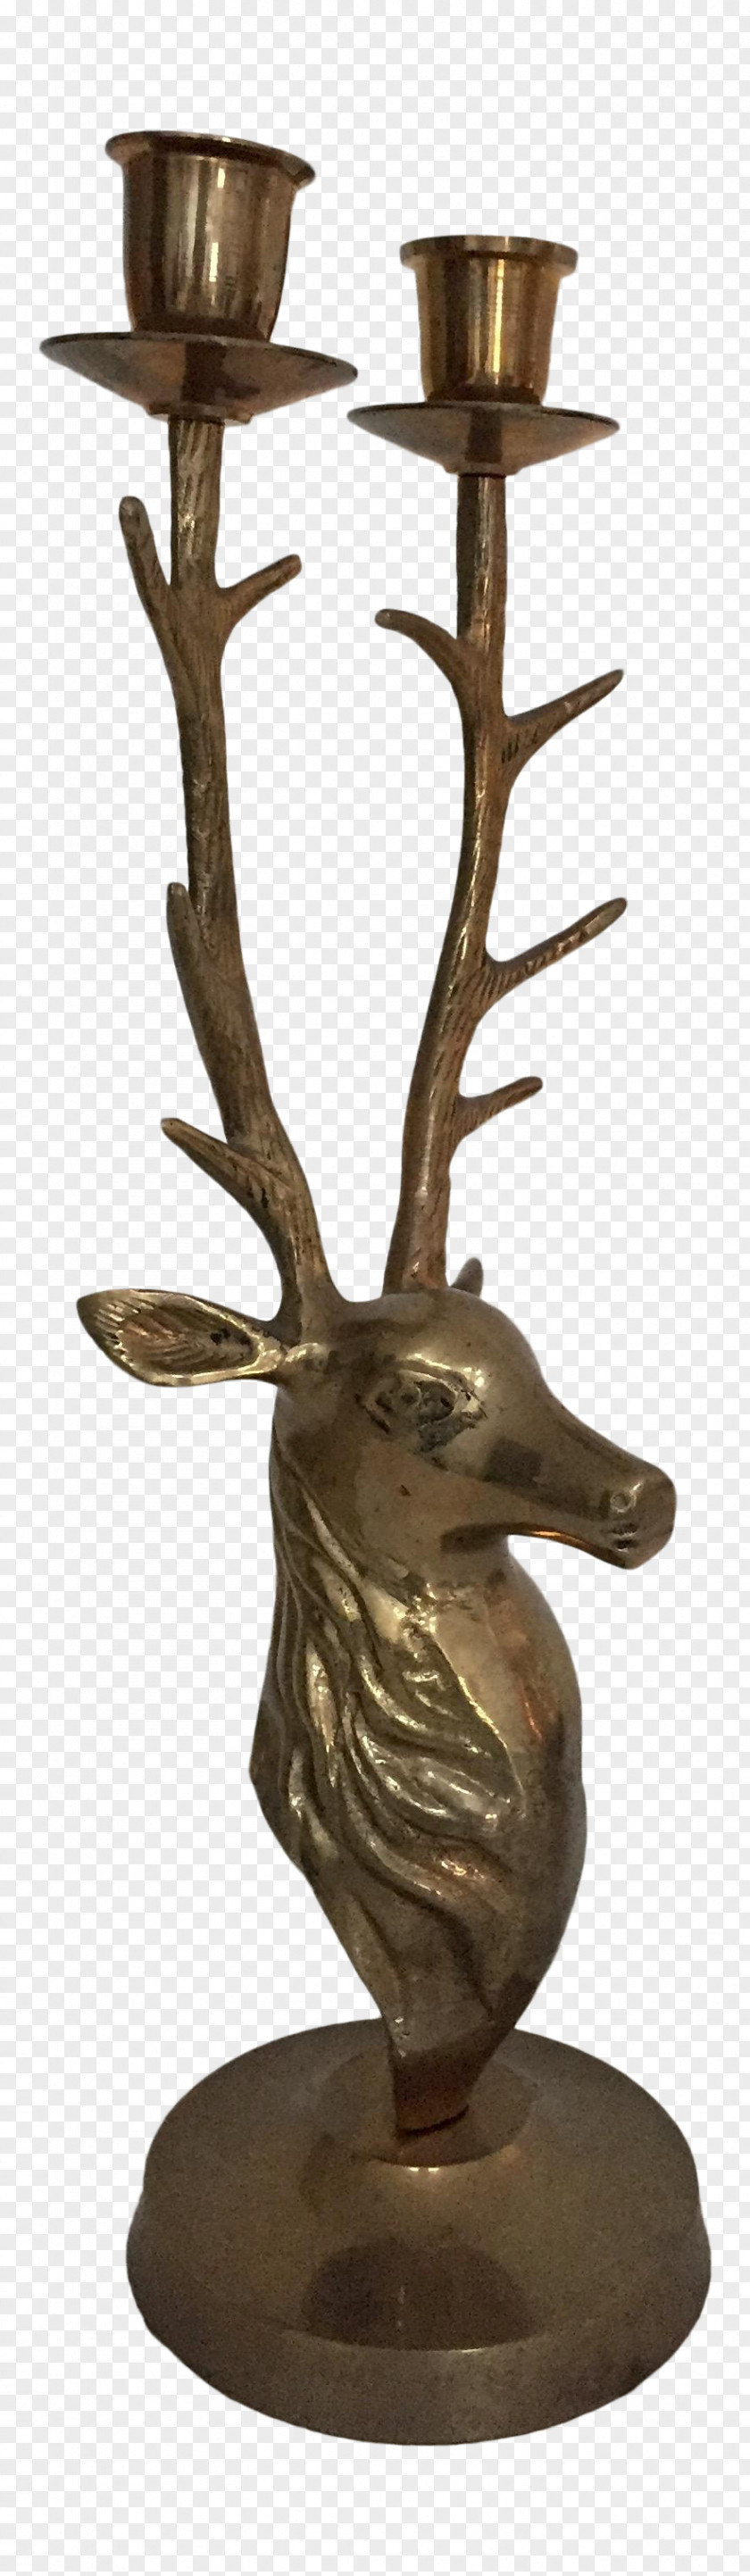 Antler Bronze Sculpture Metal 01504 PNG